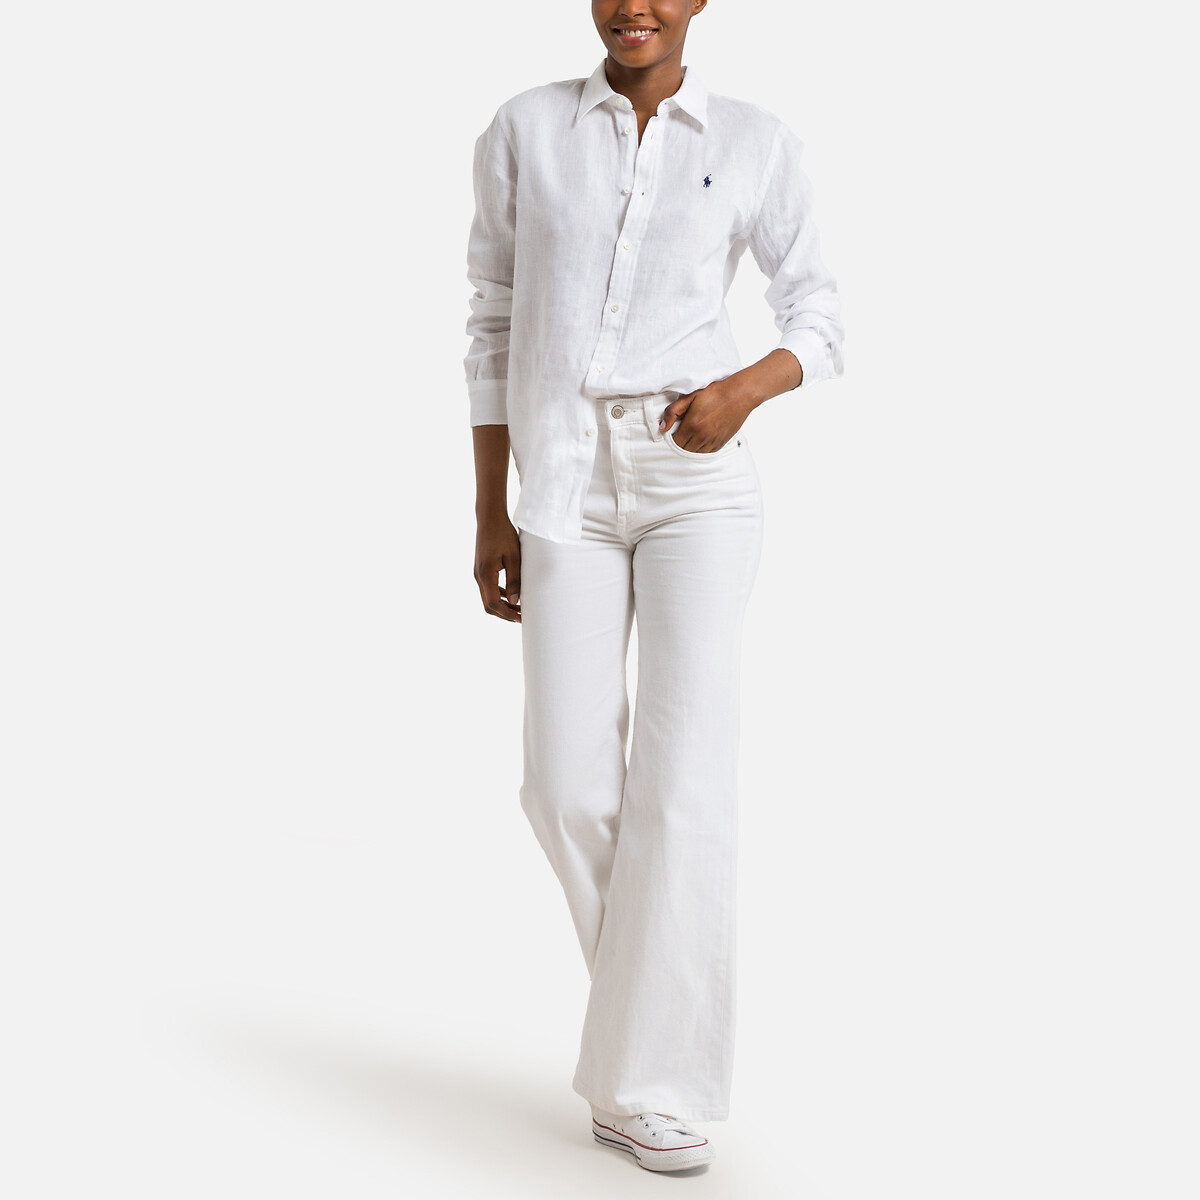 Рубашка Льняная с длинными рукавами S белый LaRedoute, размер S - фото 2